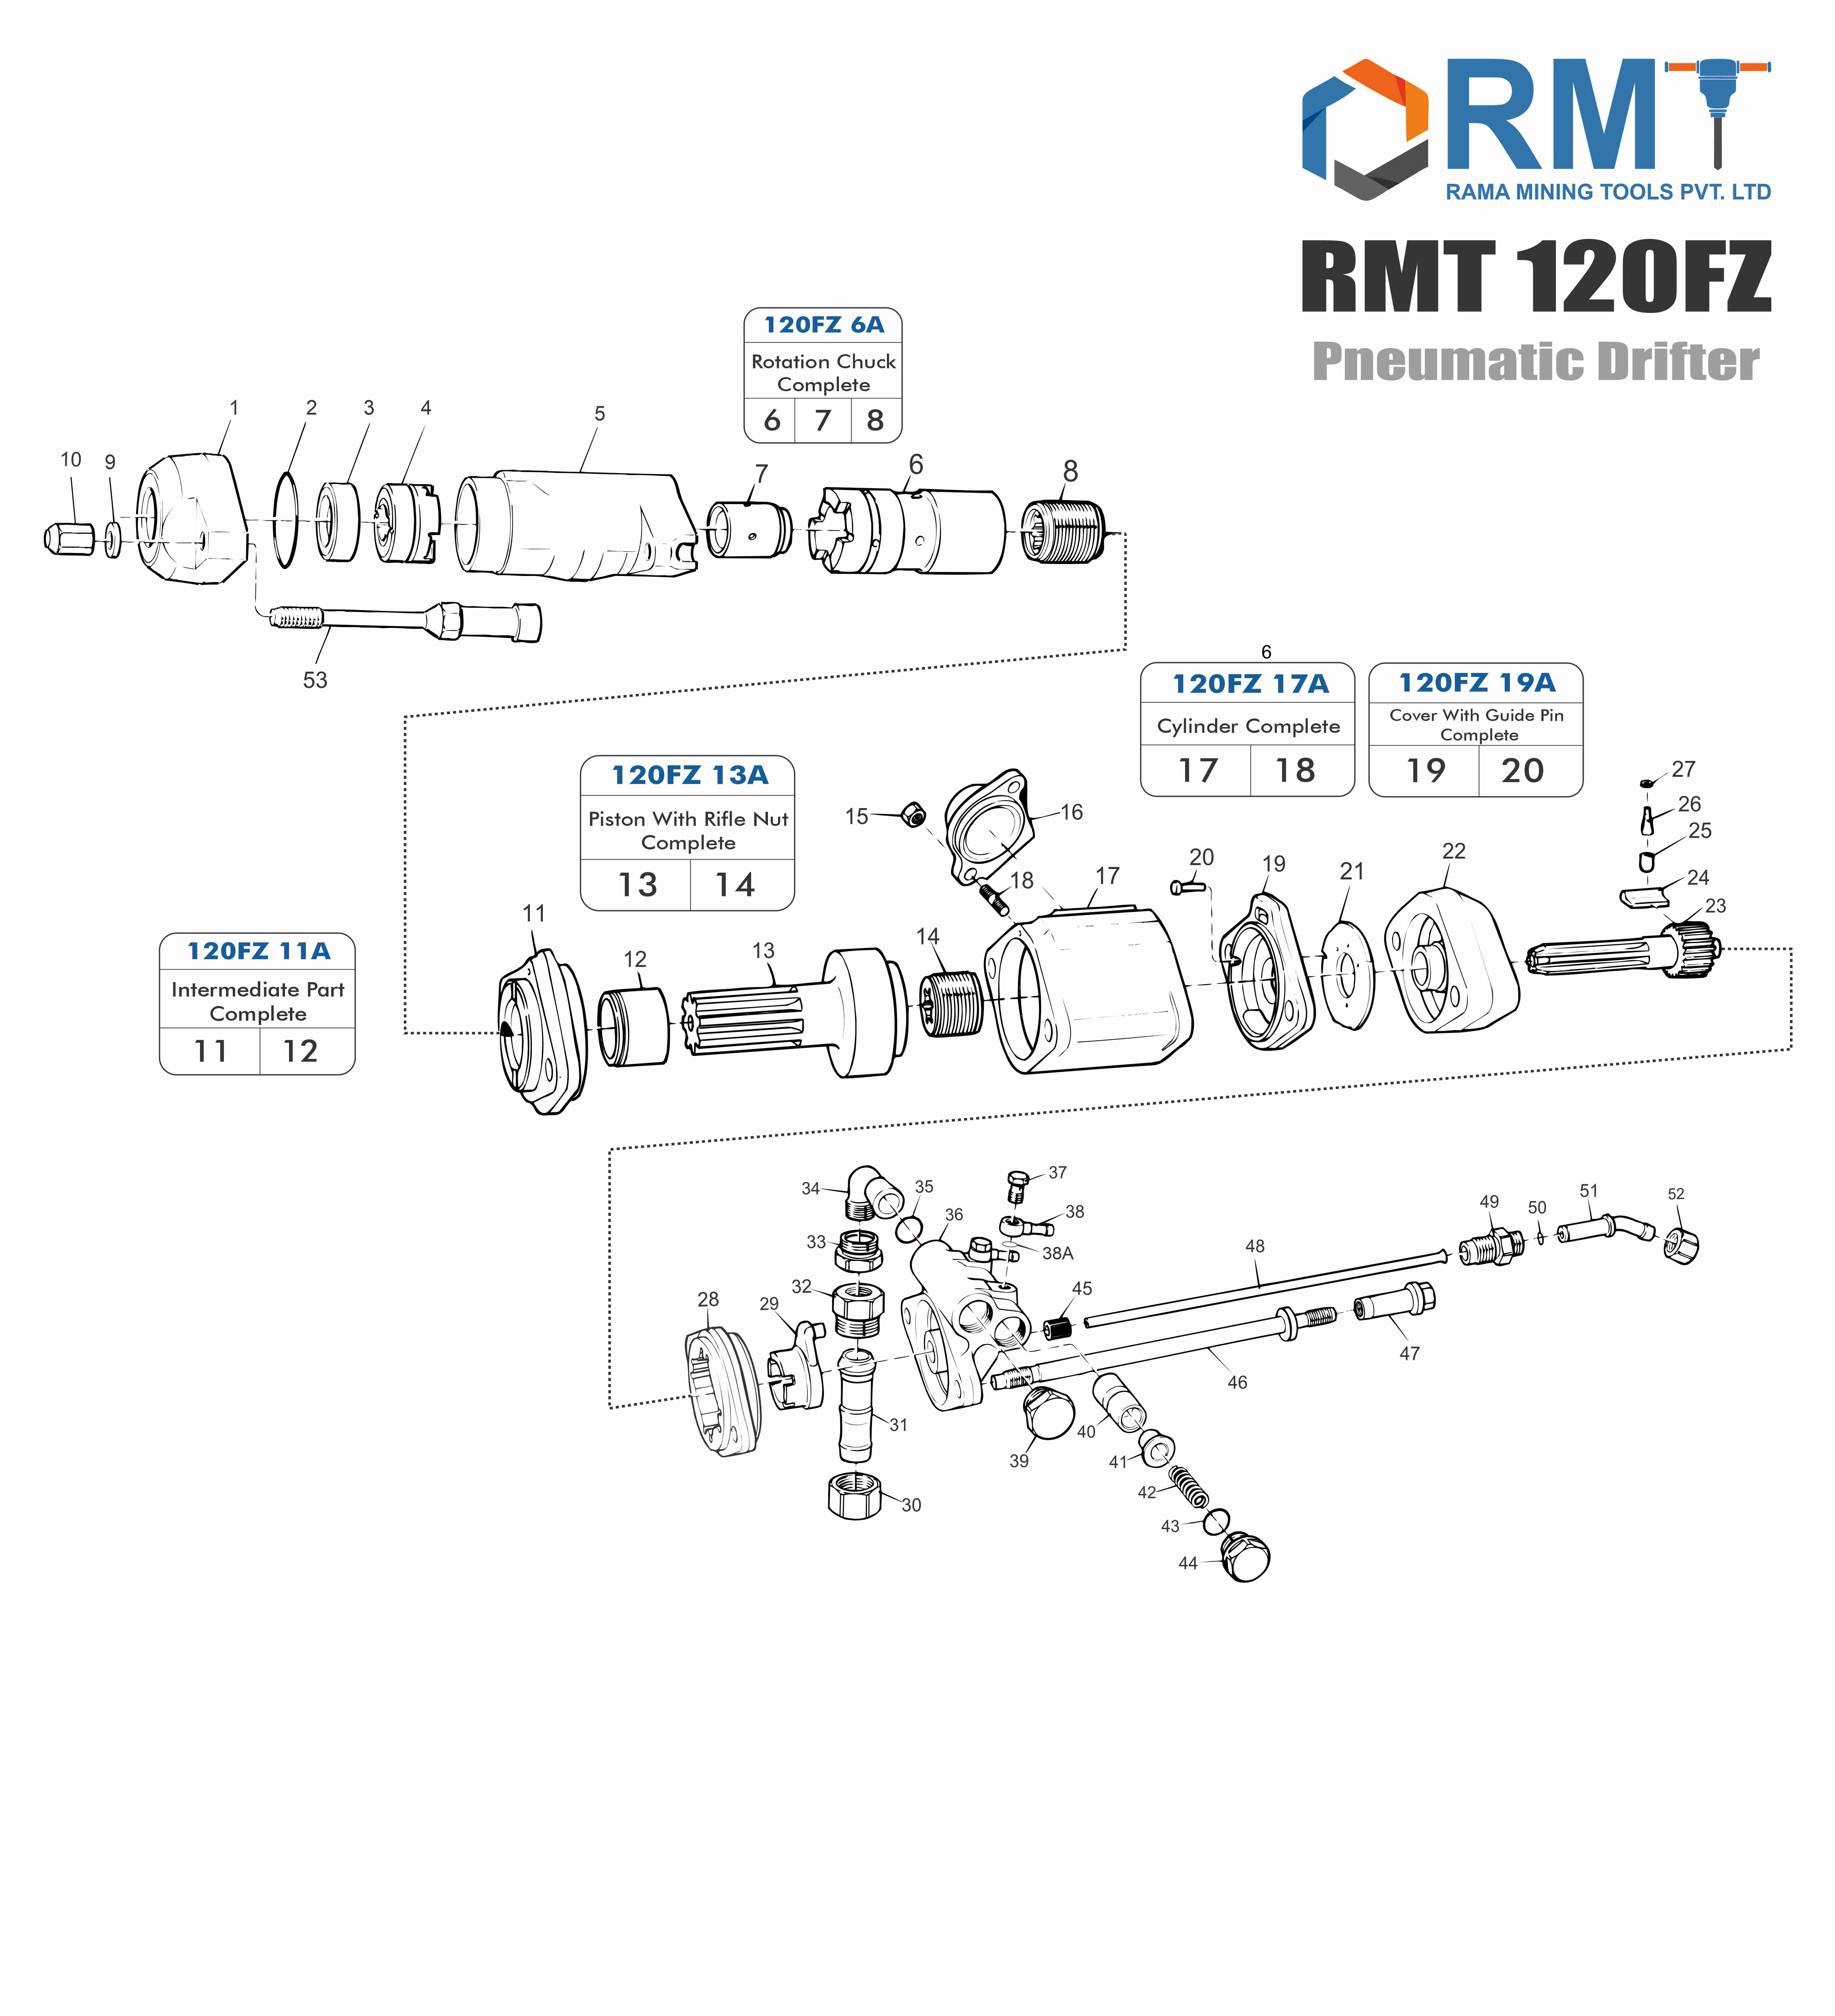 RMT 120FZ - Pneumatic Drifter